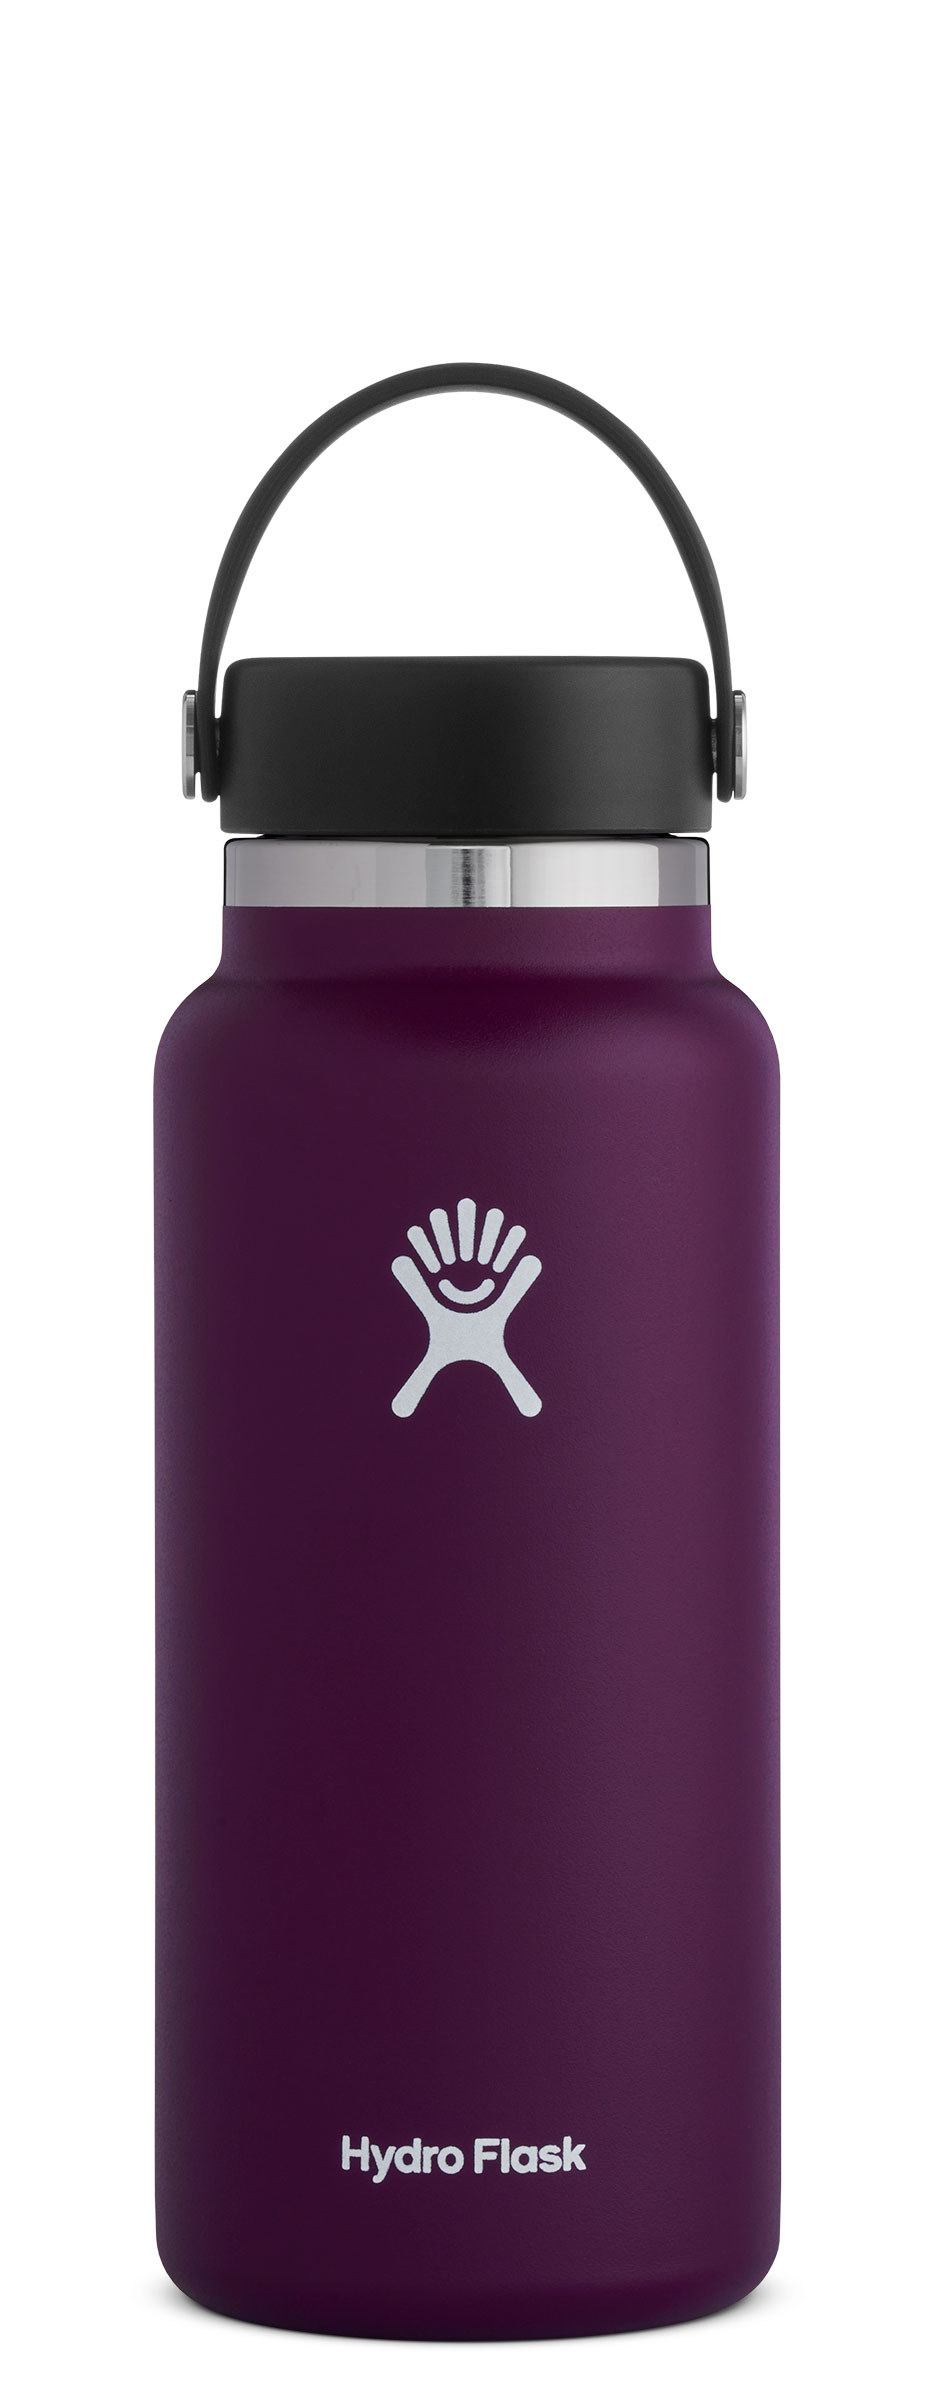 32-oz purple Hydro Flask water bottle